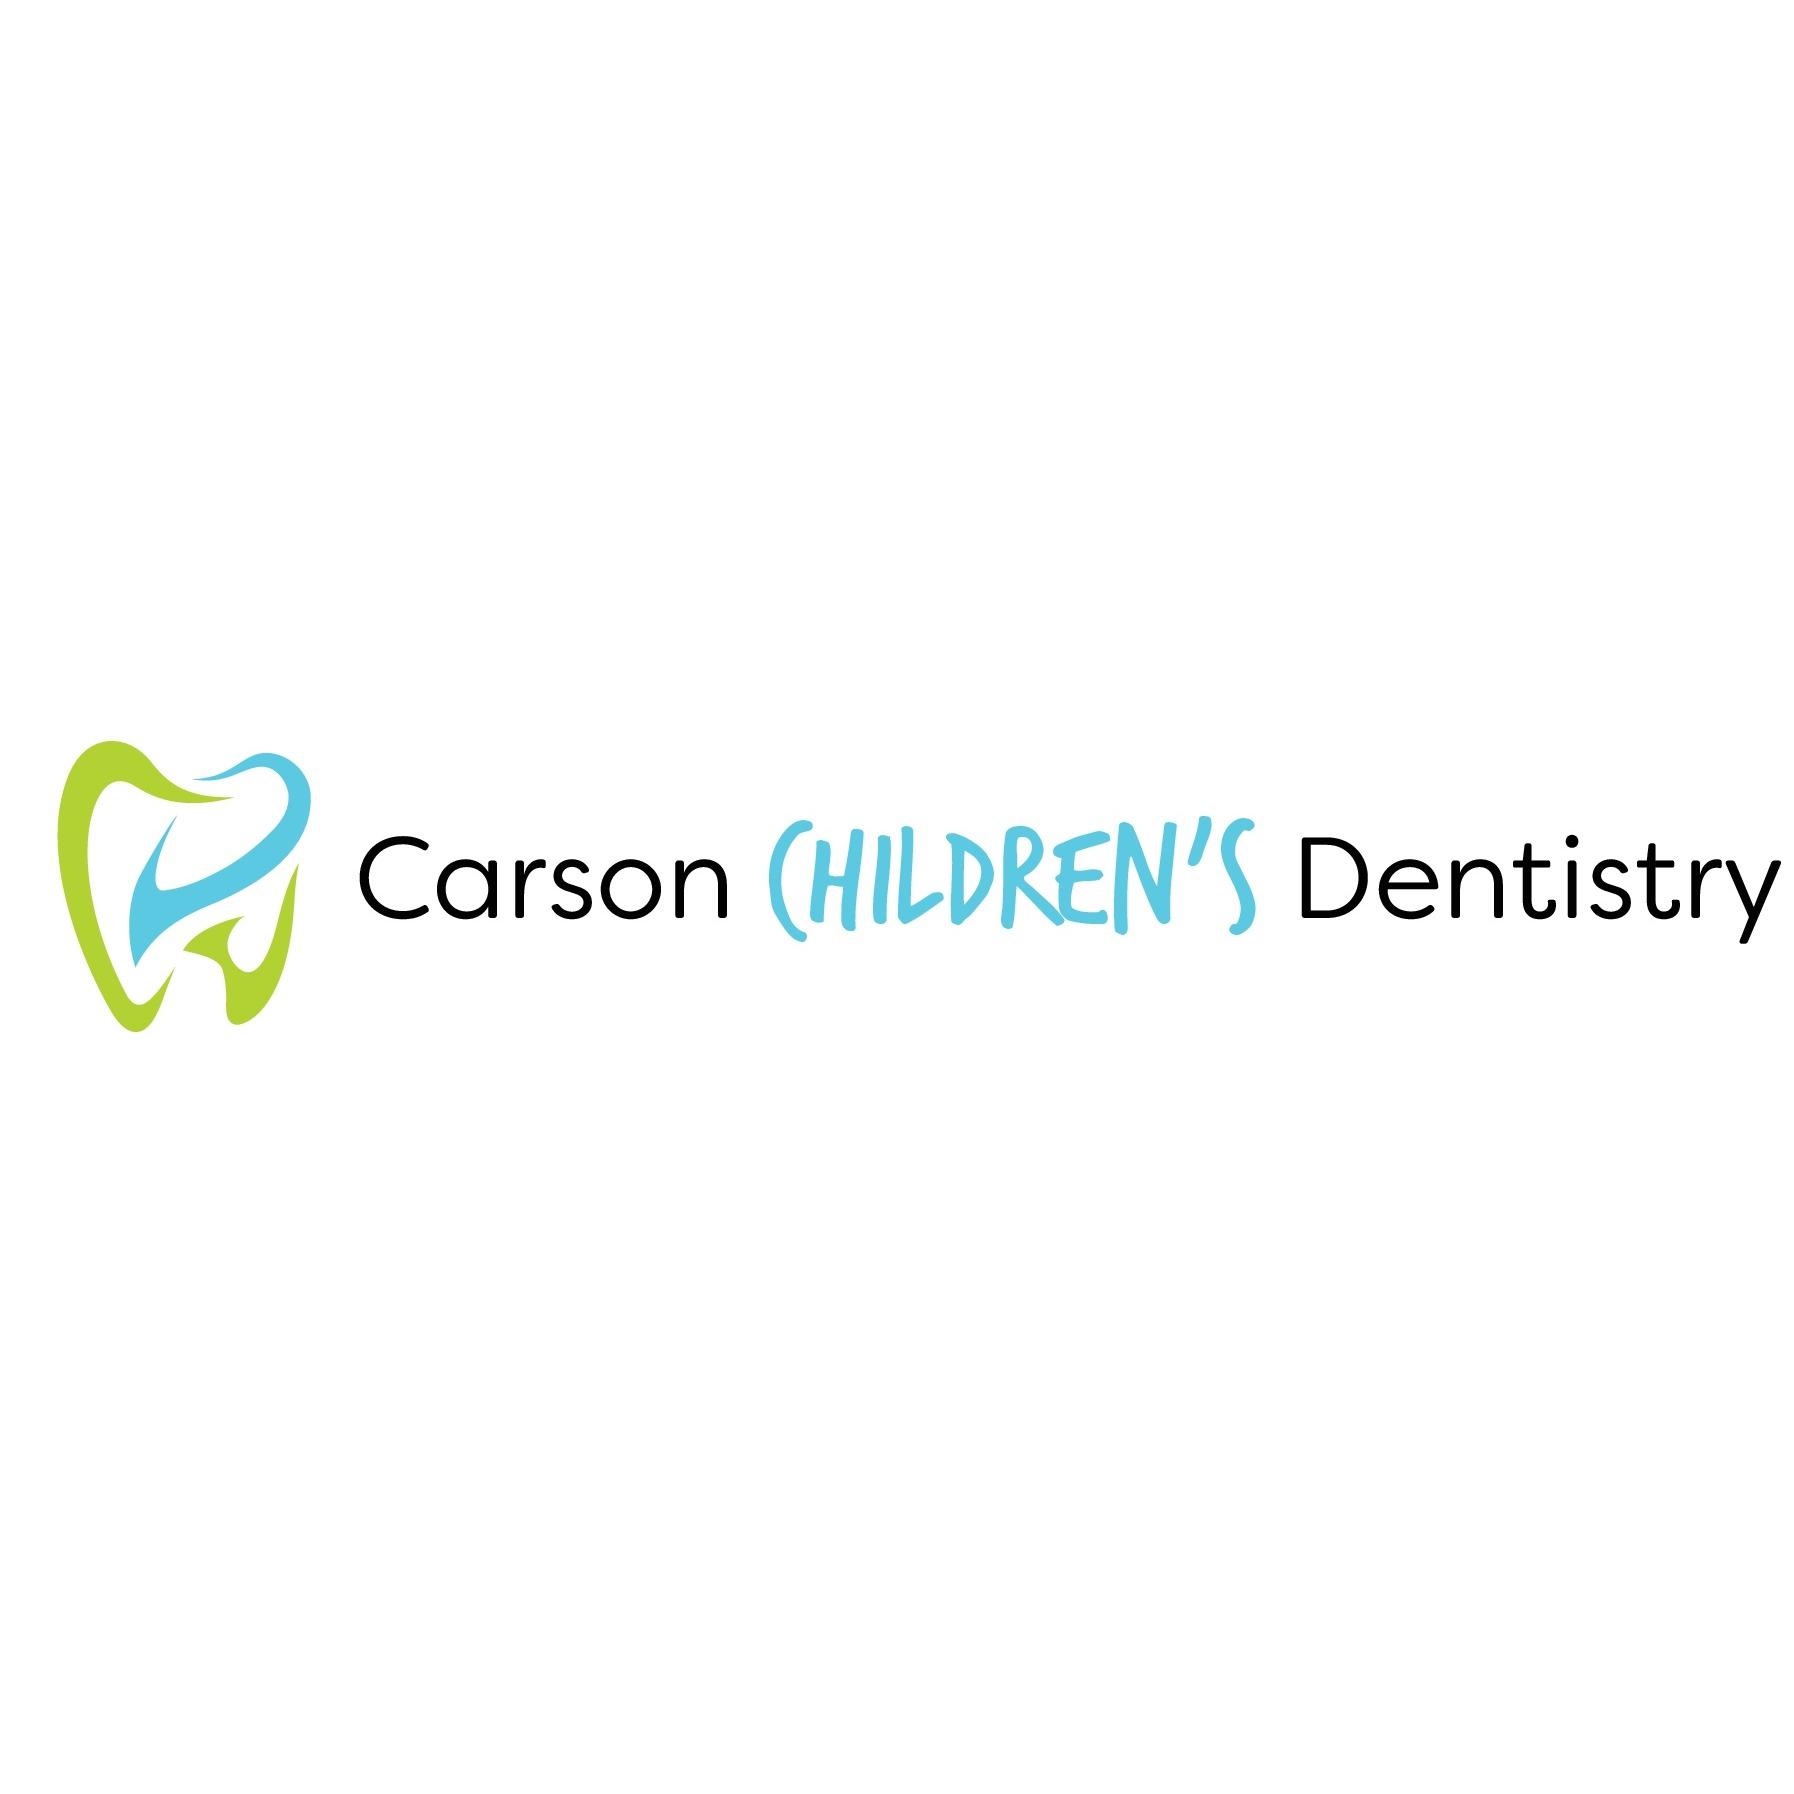 Carson Children's Dentistry Logo